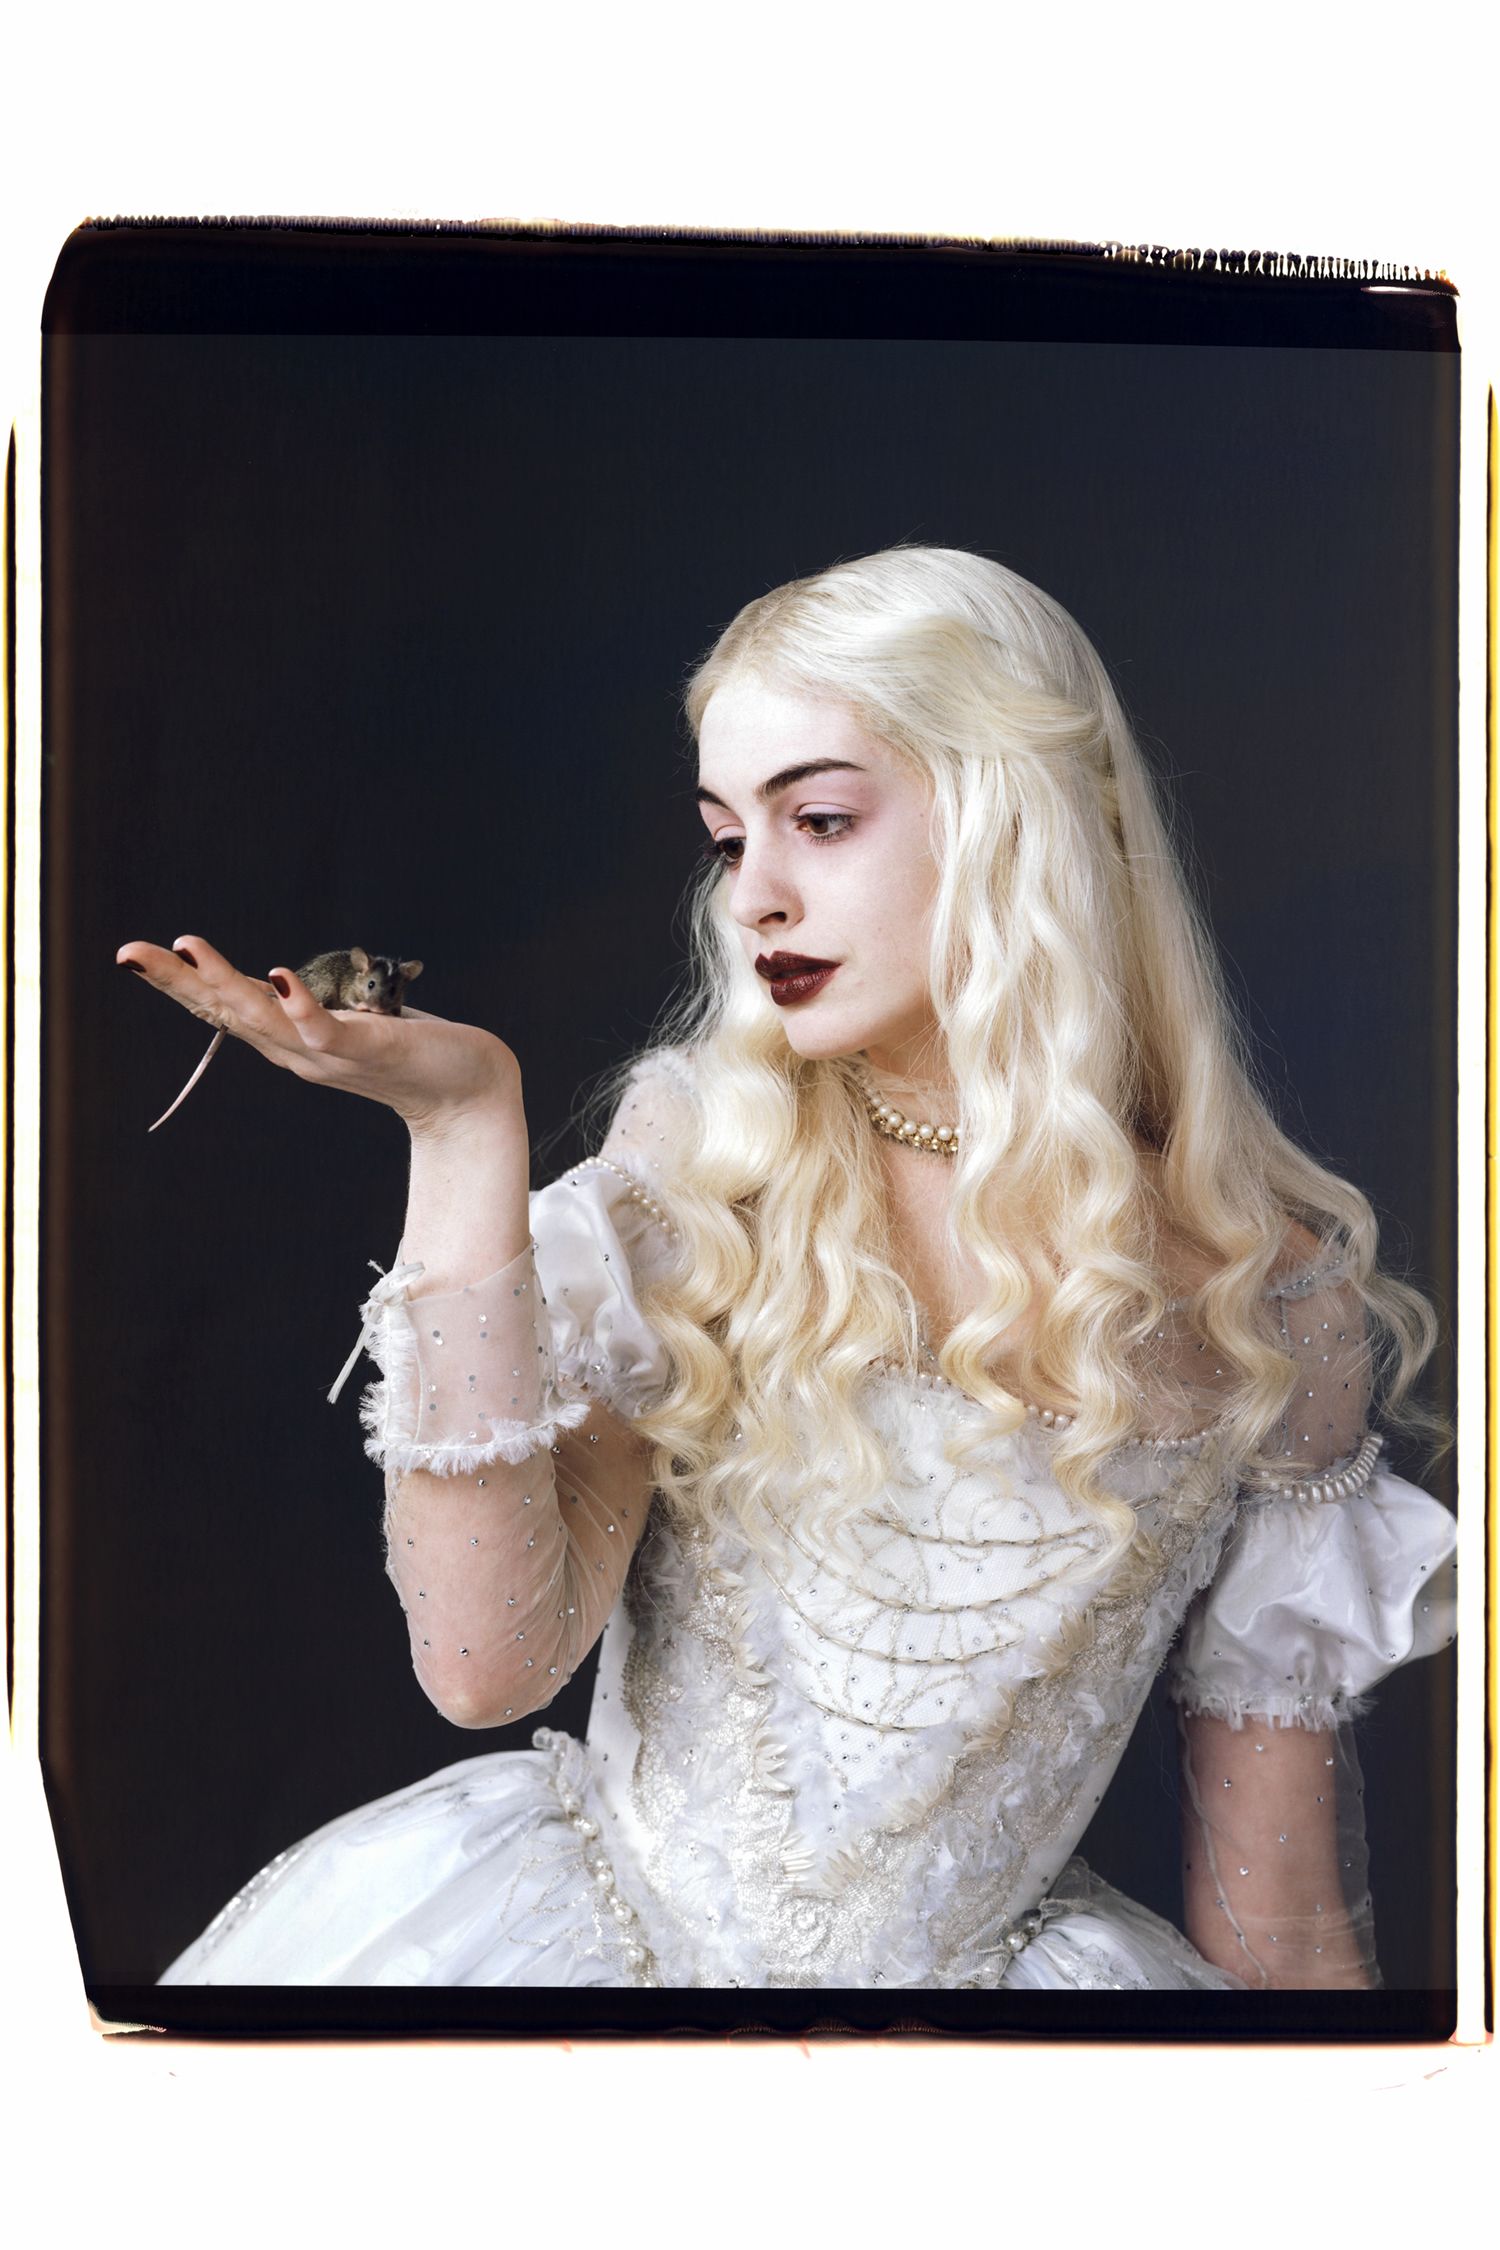 Anne Hathaway's White Queen from Tim Burton's Alice in Wonderland